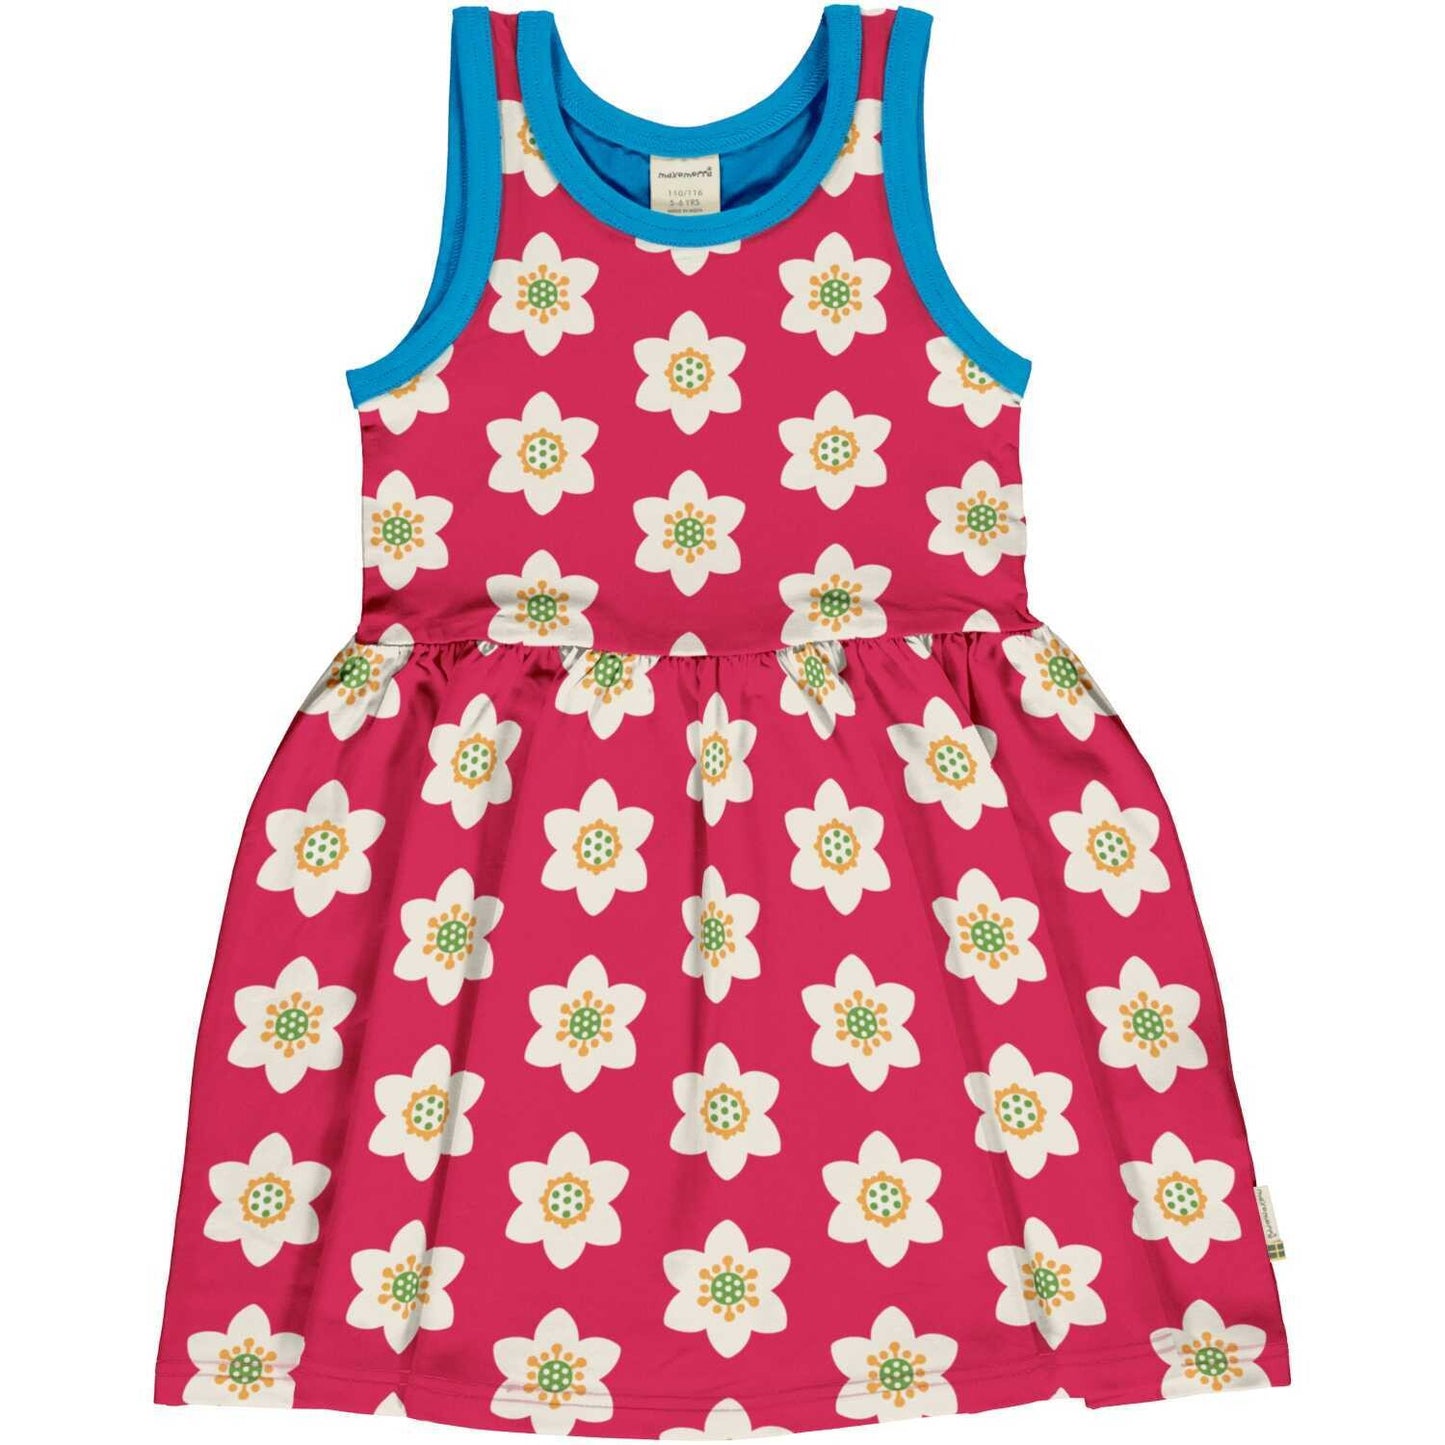 Žaisminga suknelė mergaitėms iš GOTS sertifikuotos organinės medvilnės, be rankovių. Ryškiai rožinės spalvos, marginta šviesių gėlyčių raštu ir žydromis detalėmis.